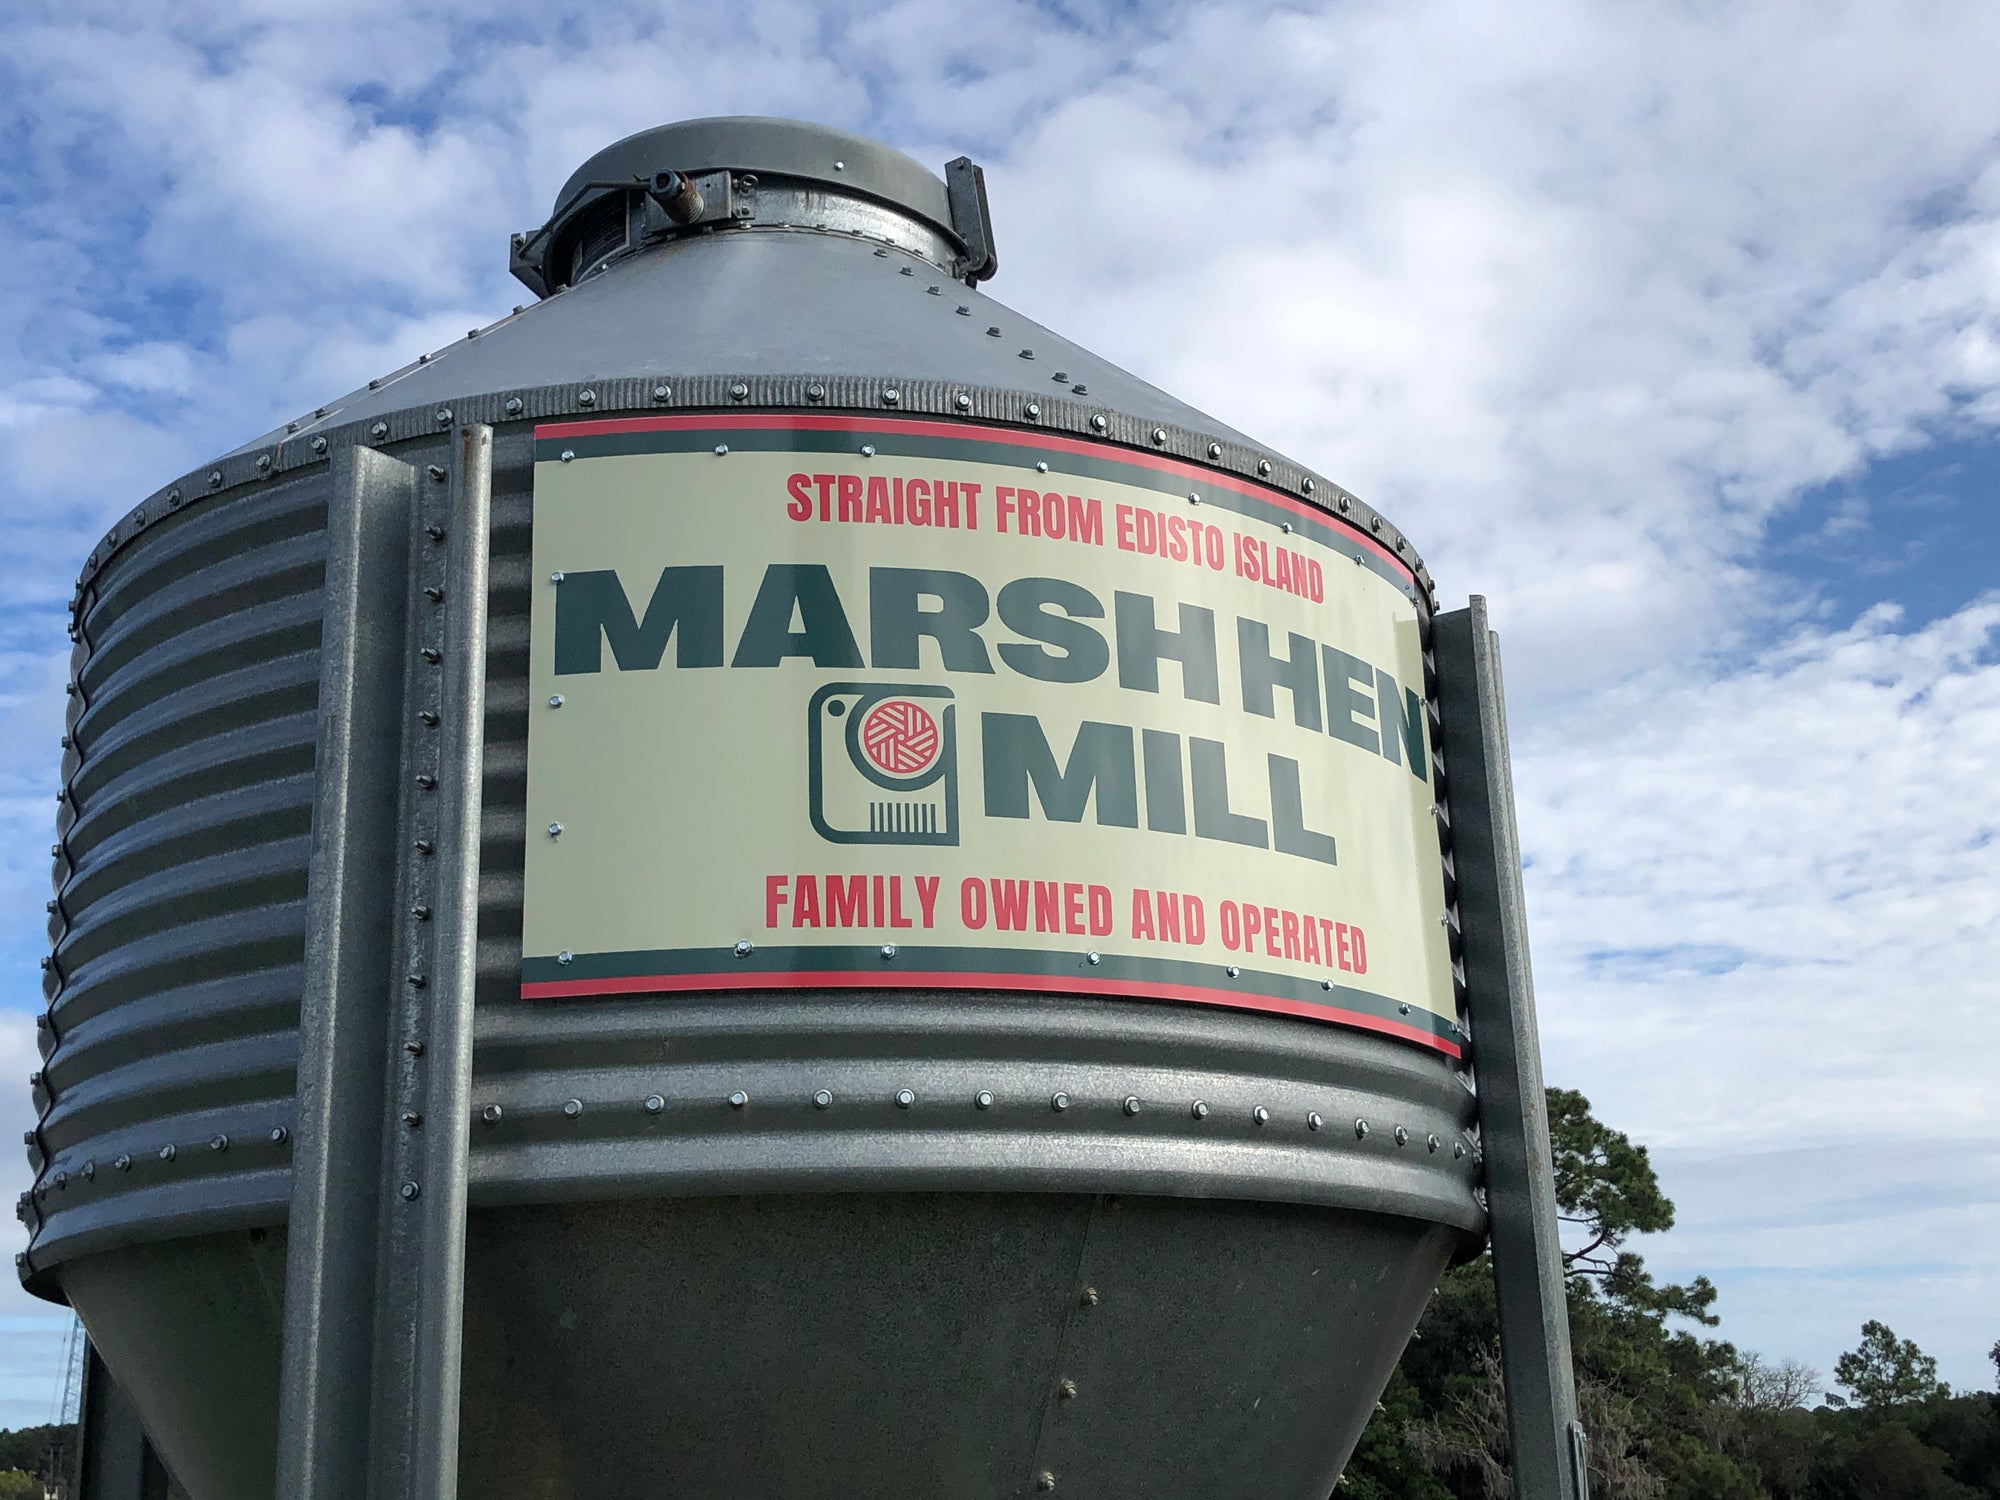 Partnership Spotlight: Marsh Hen Mill